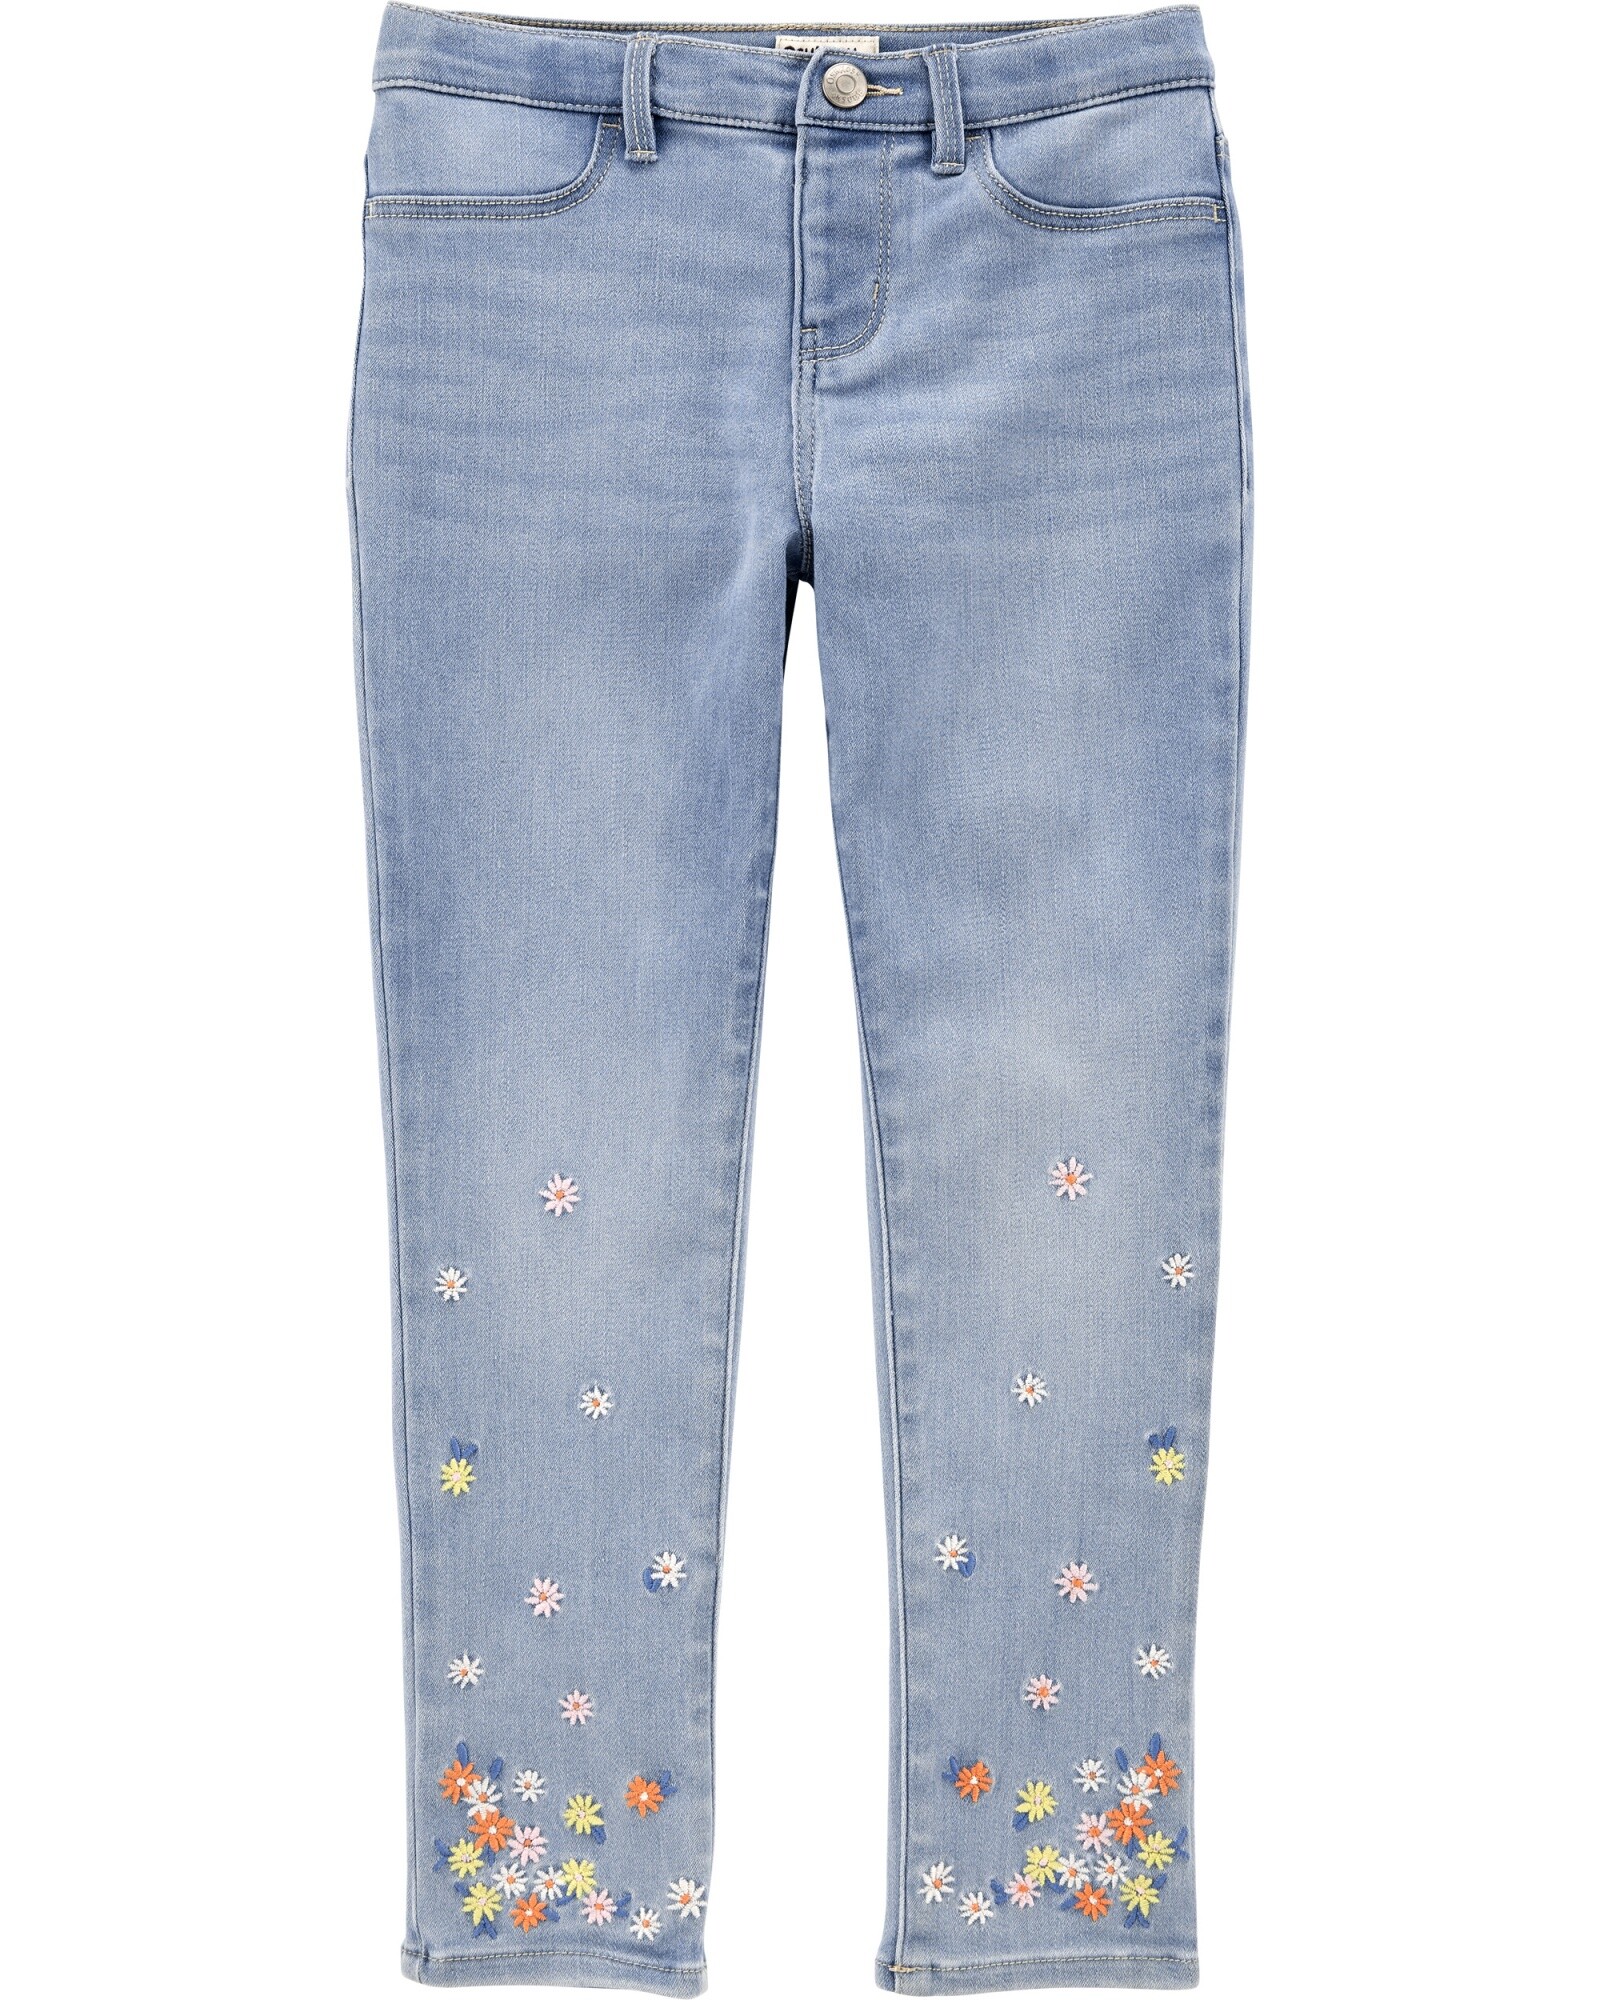 Pantalón de jean con flores bordadas — Carter´s Uruguay